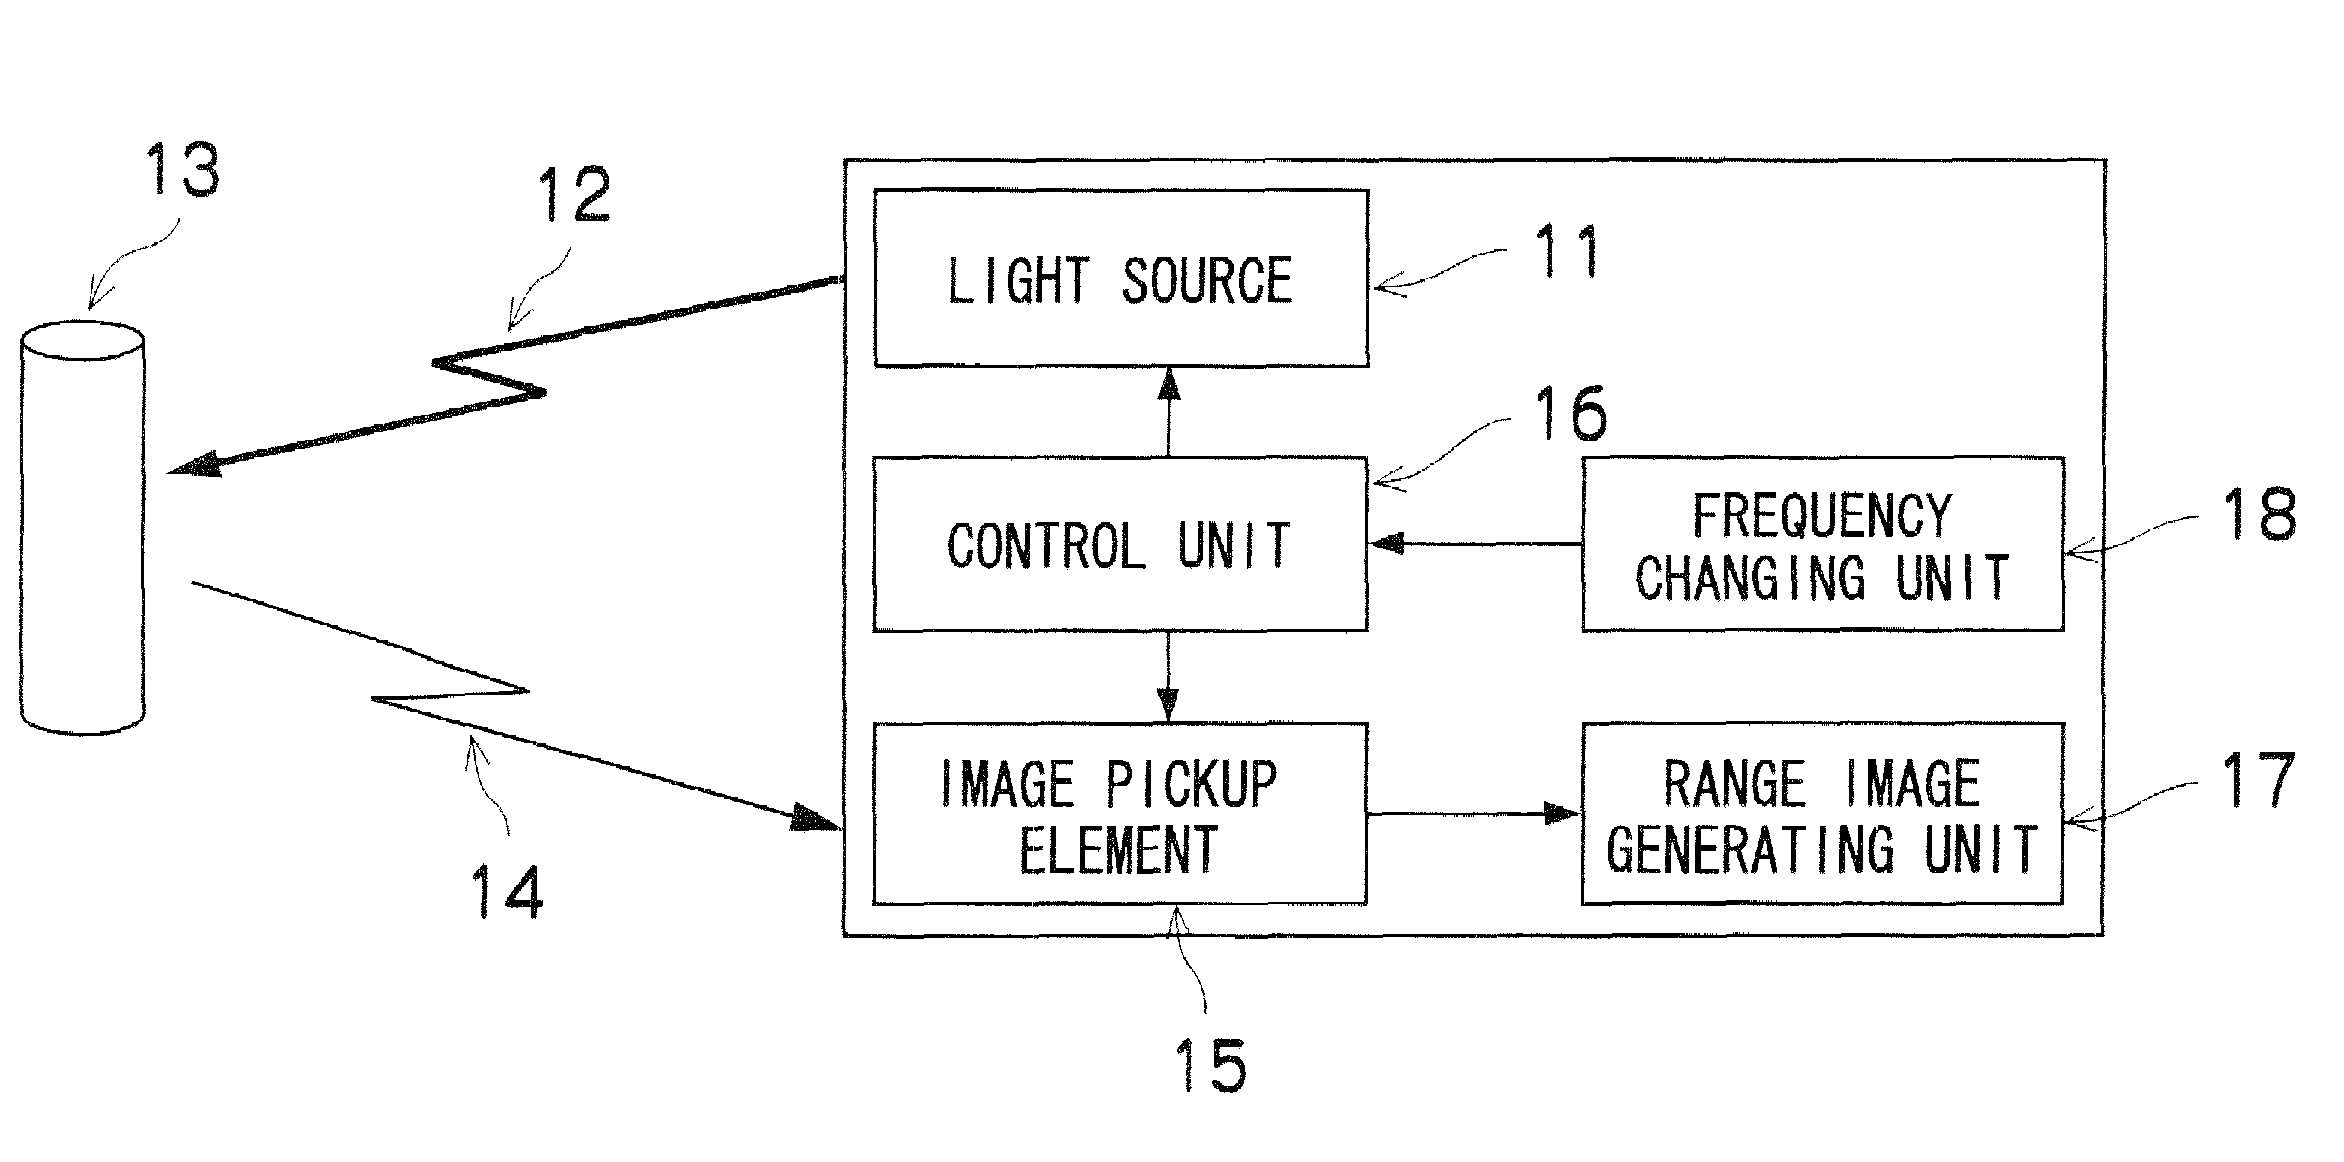 Range image generating apparatus